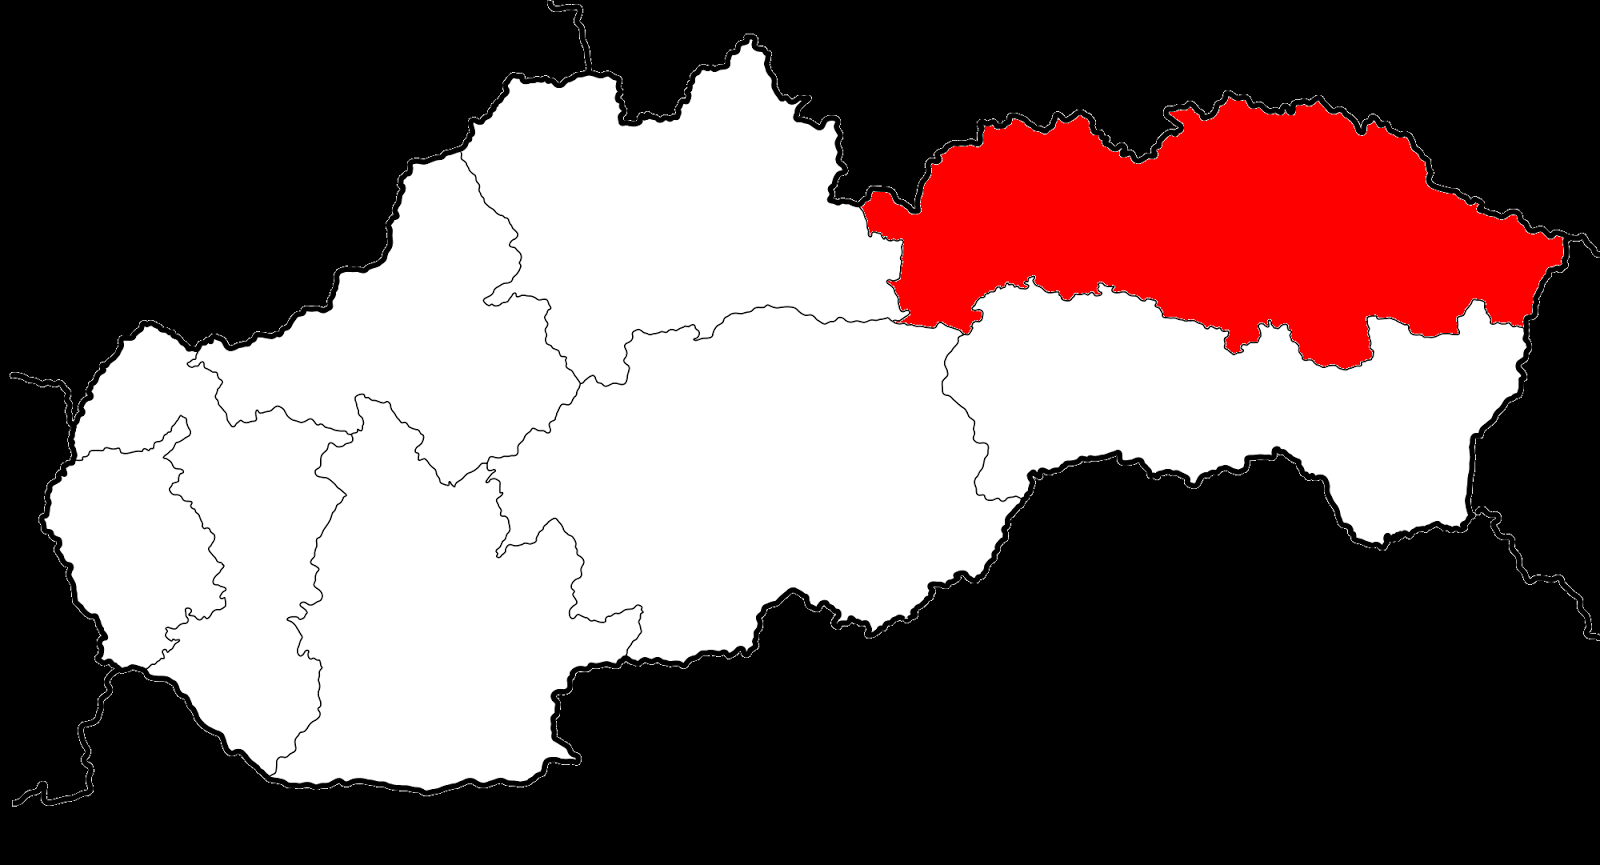 http://en.wikipedia.org/wiki/Regions_of_Slovakia